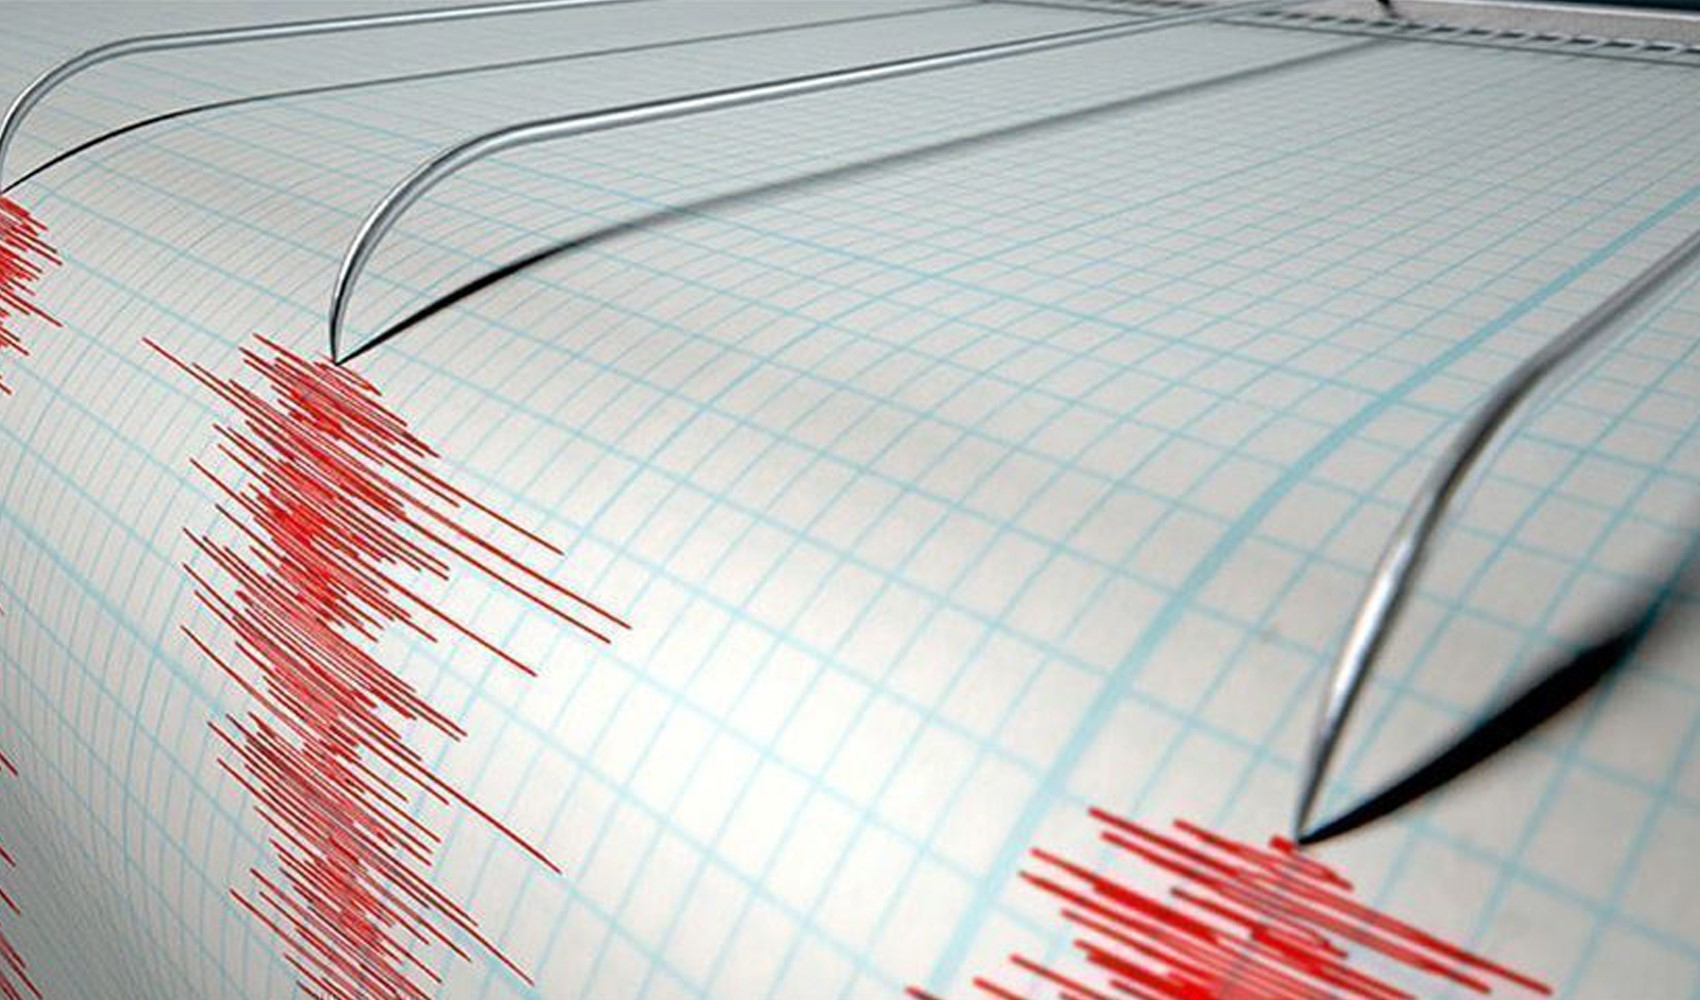 Çanakkale Valisi İlhami Aktaş'tan deprem açıklaması! 'Olumsuz bir durum yaşanmamıştır'